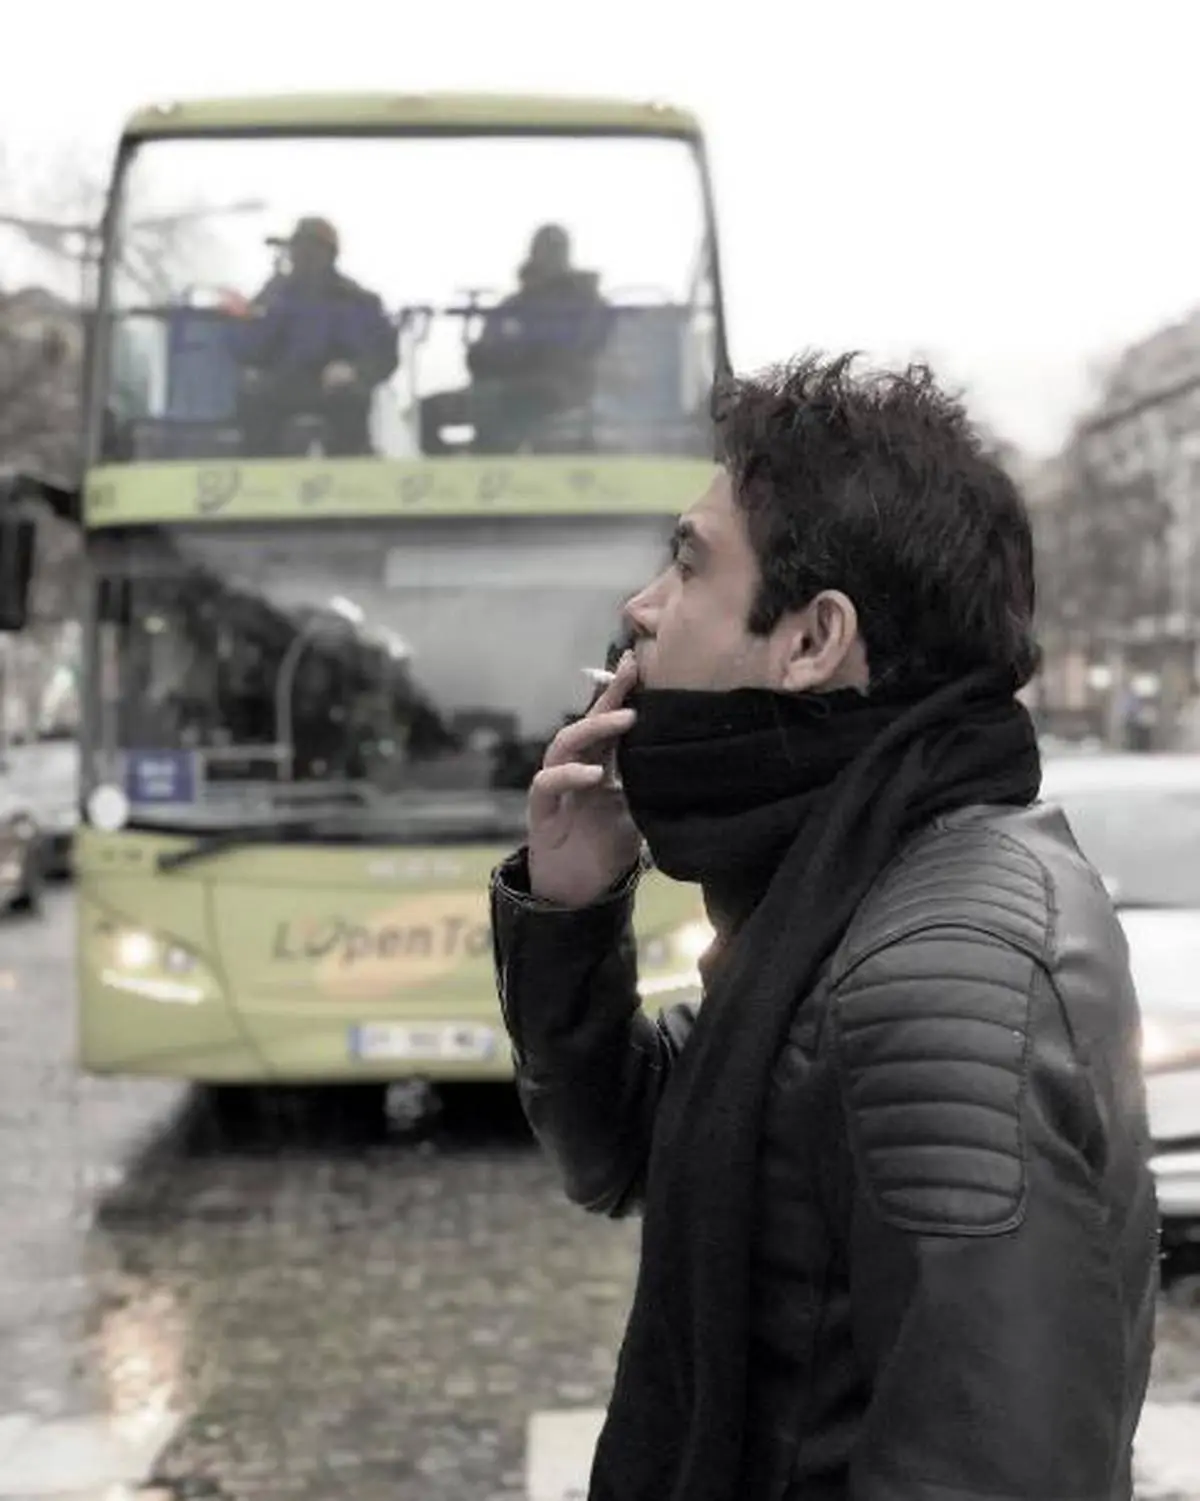 سیگار کشیدن محسن چاوشی در خیابان های پاریس!